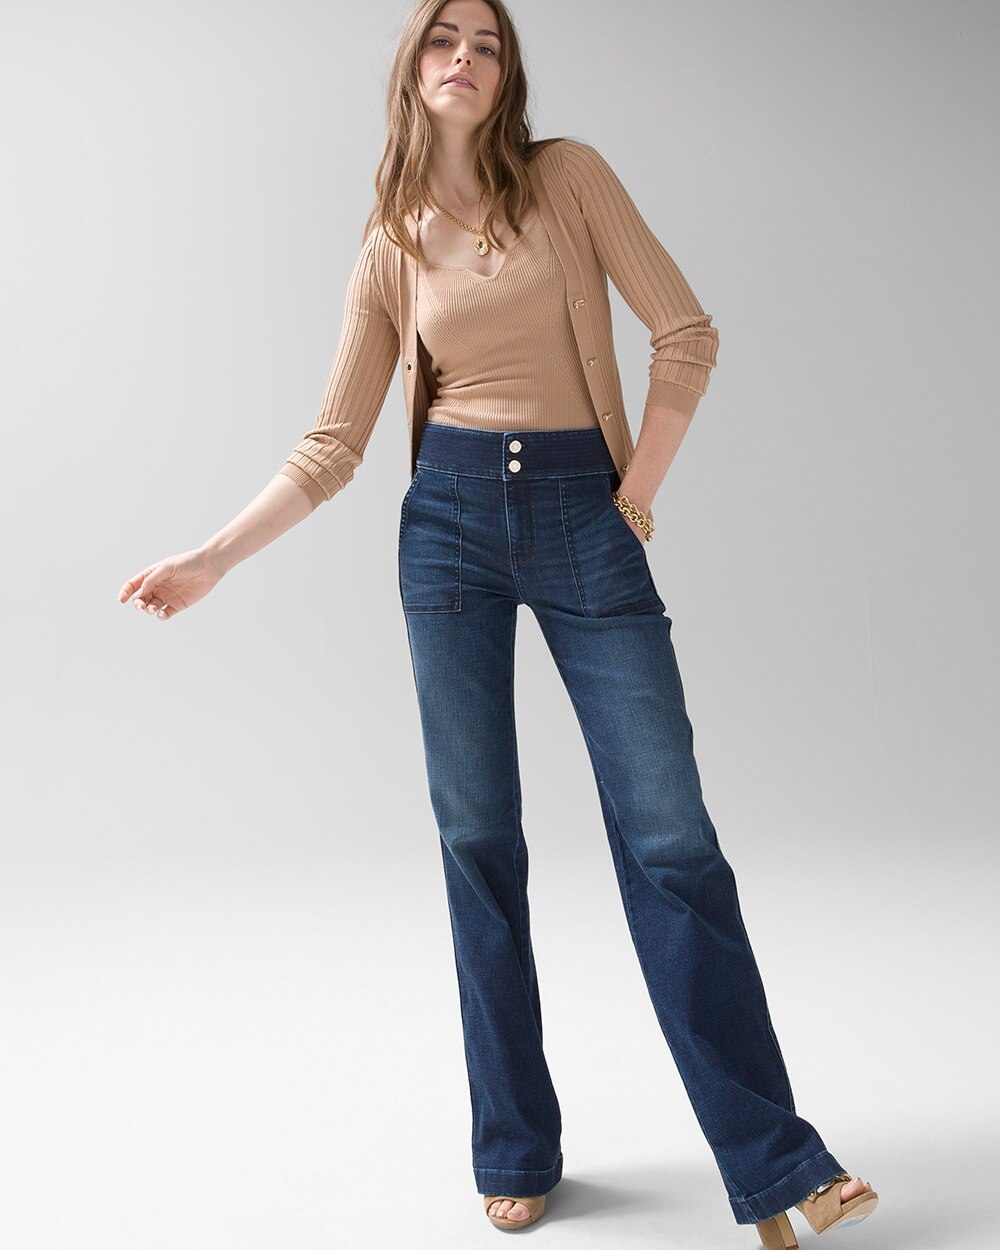 Extra High-Rise Everyday Soft Denim\u2122 Trupunto Trouser Jeans